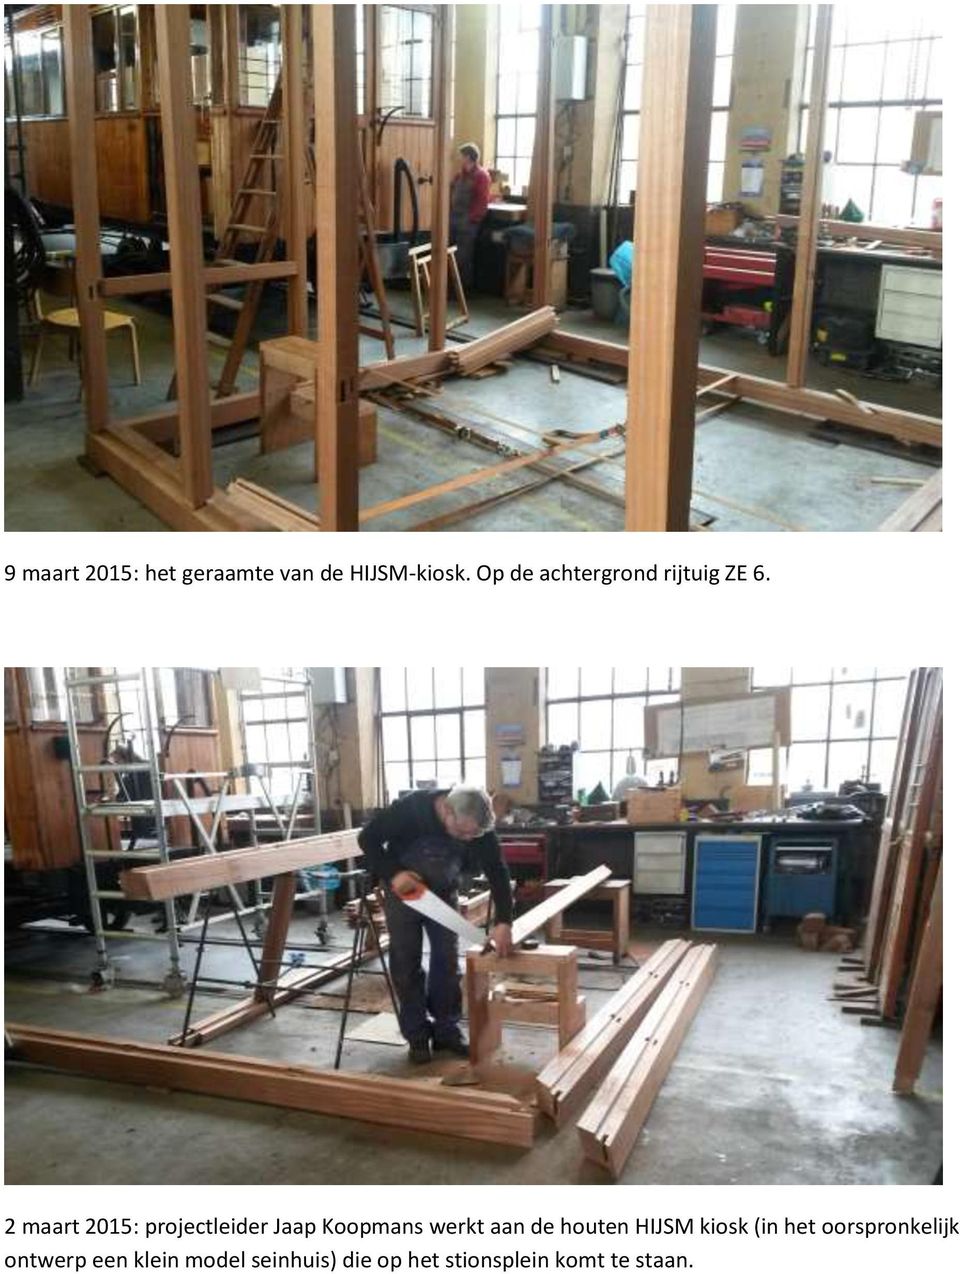 2 maart 2015: projectleider Jaap Koopmans werkt aan de houten